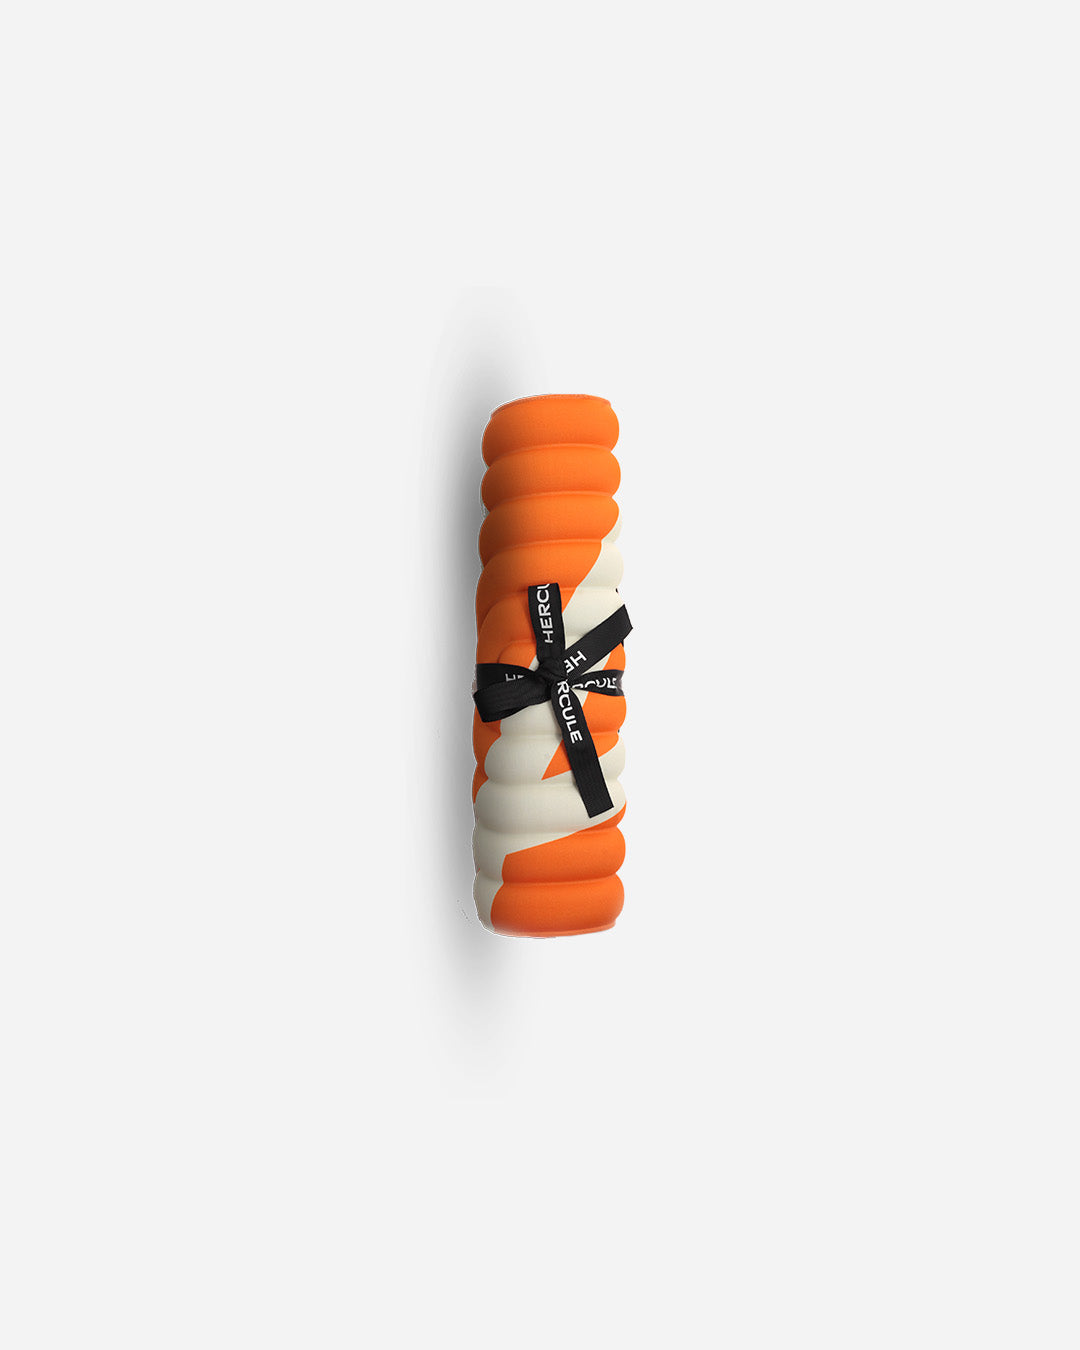 Mini tapis de sol pad de confort de la marque hercule studio modèle galé couleur axel bari orange pop packshot roulé